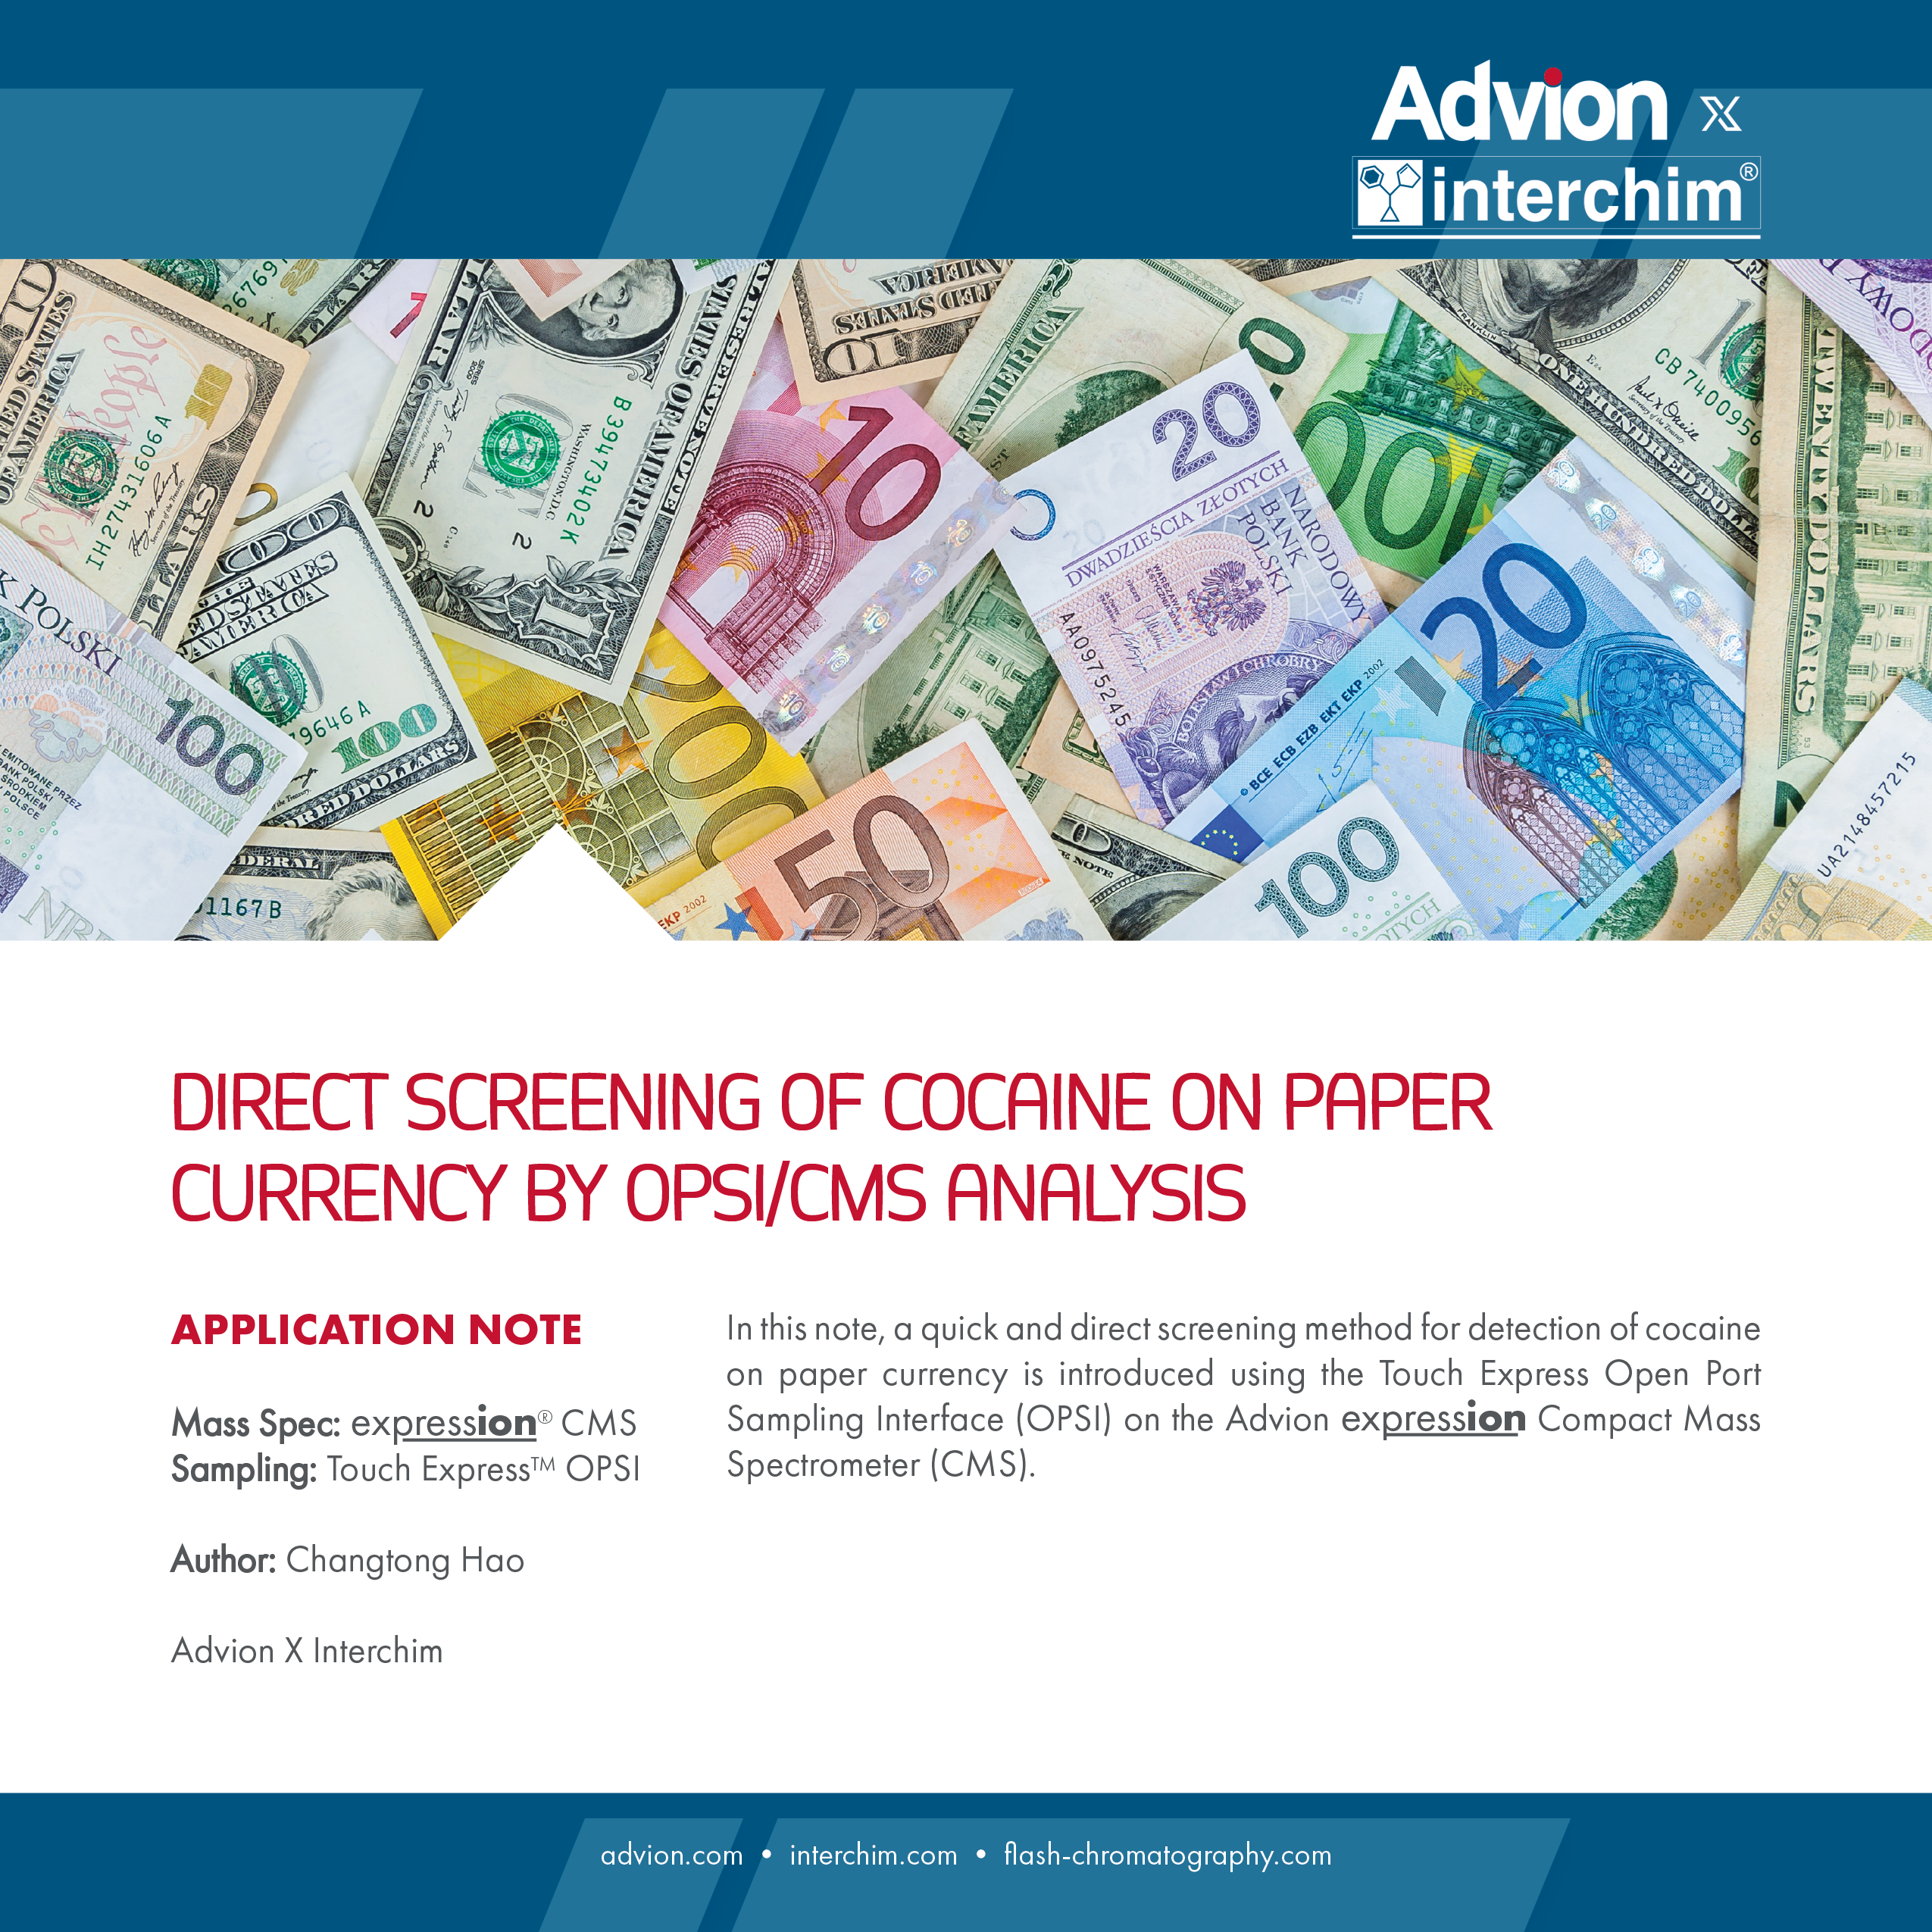 Detección directa de drogas ilícitas en papel moneda mediante análisis OPSI / CMS